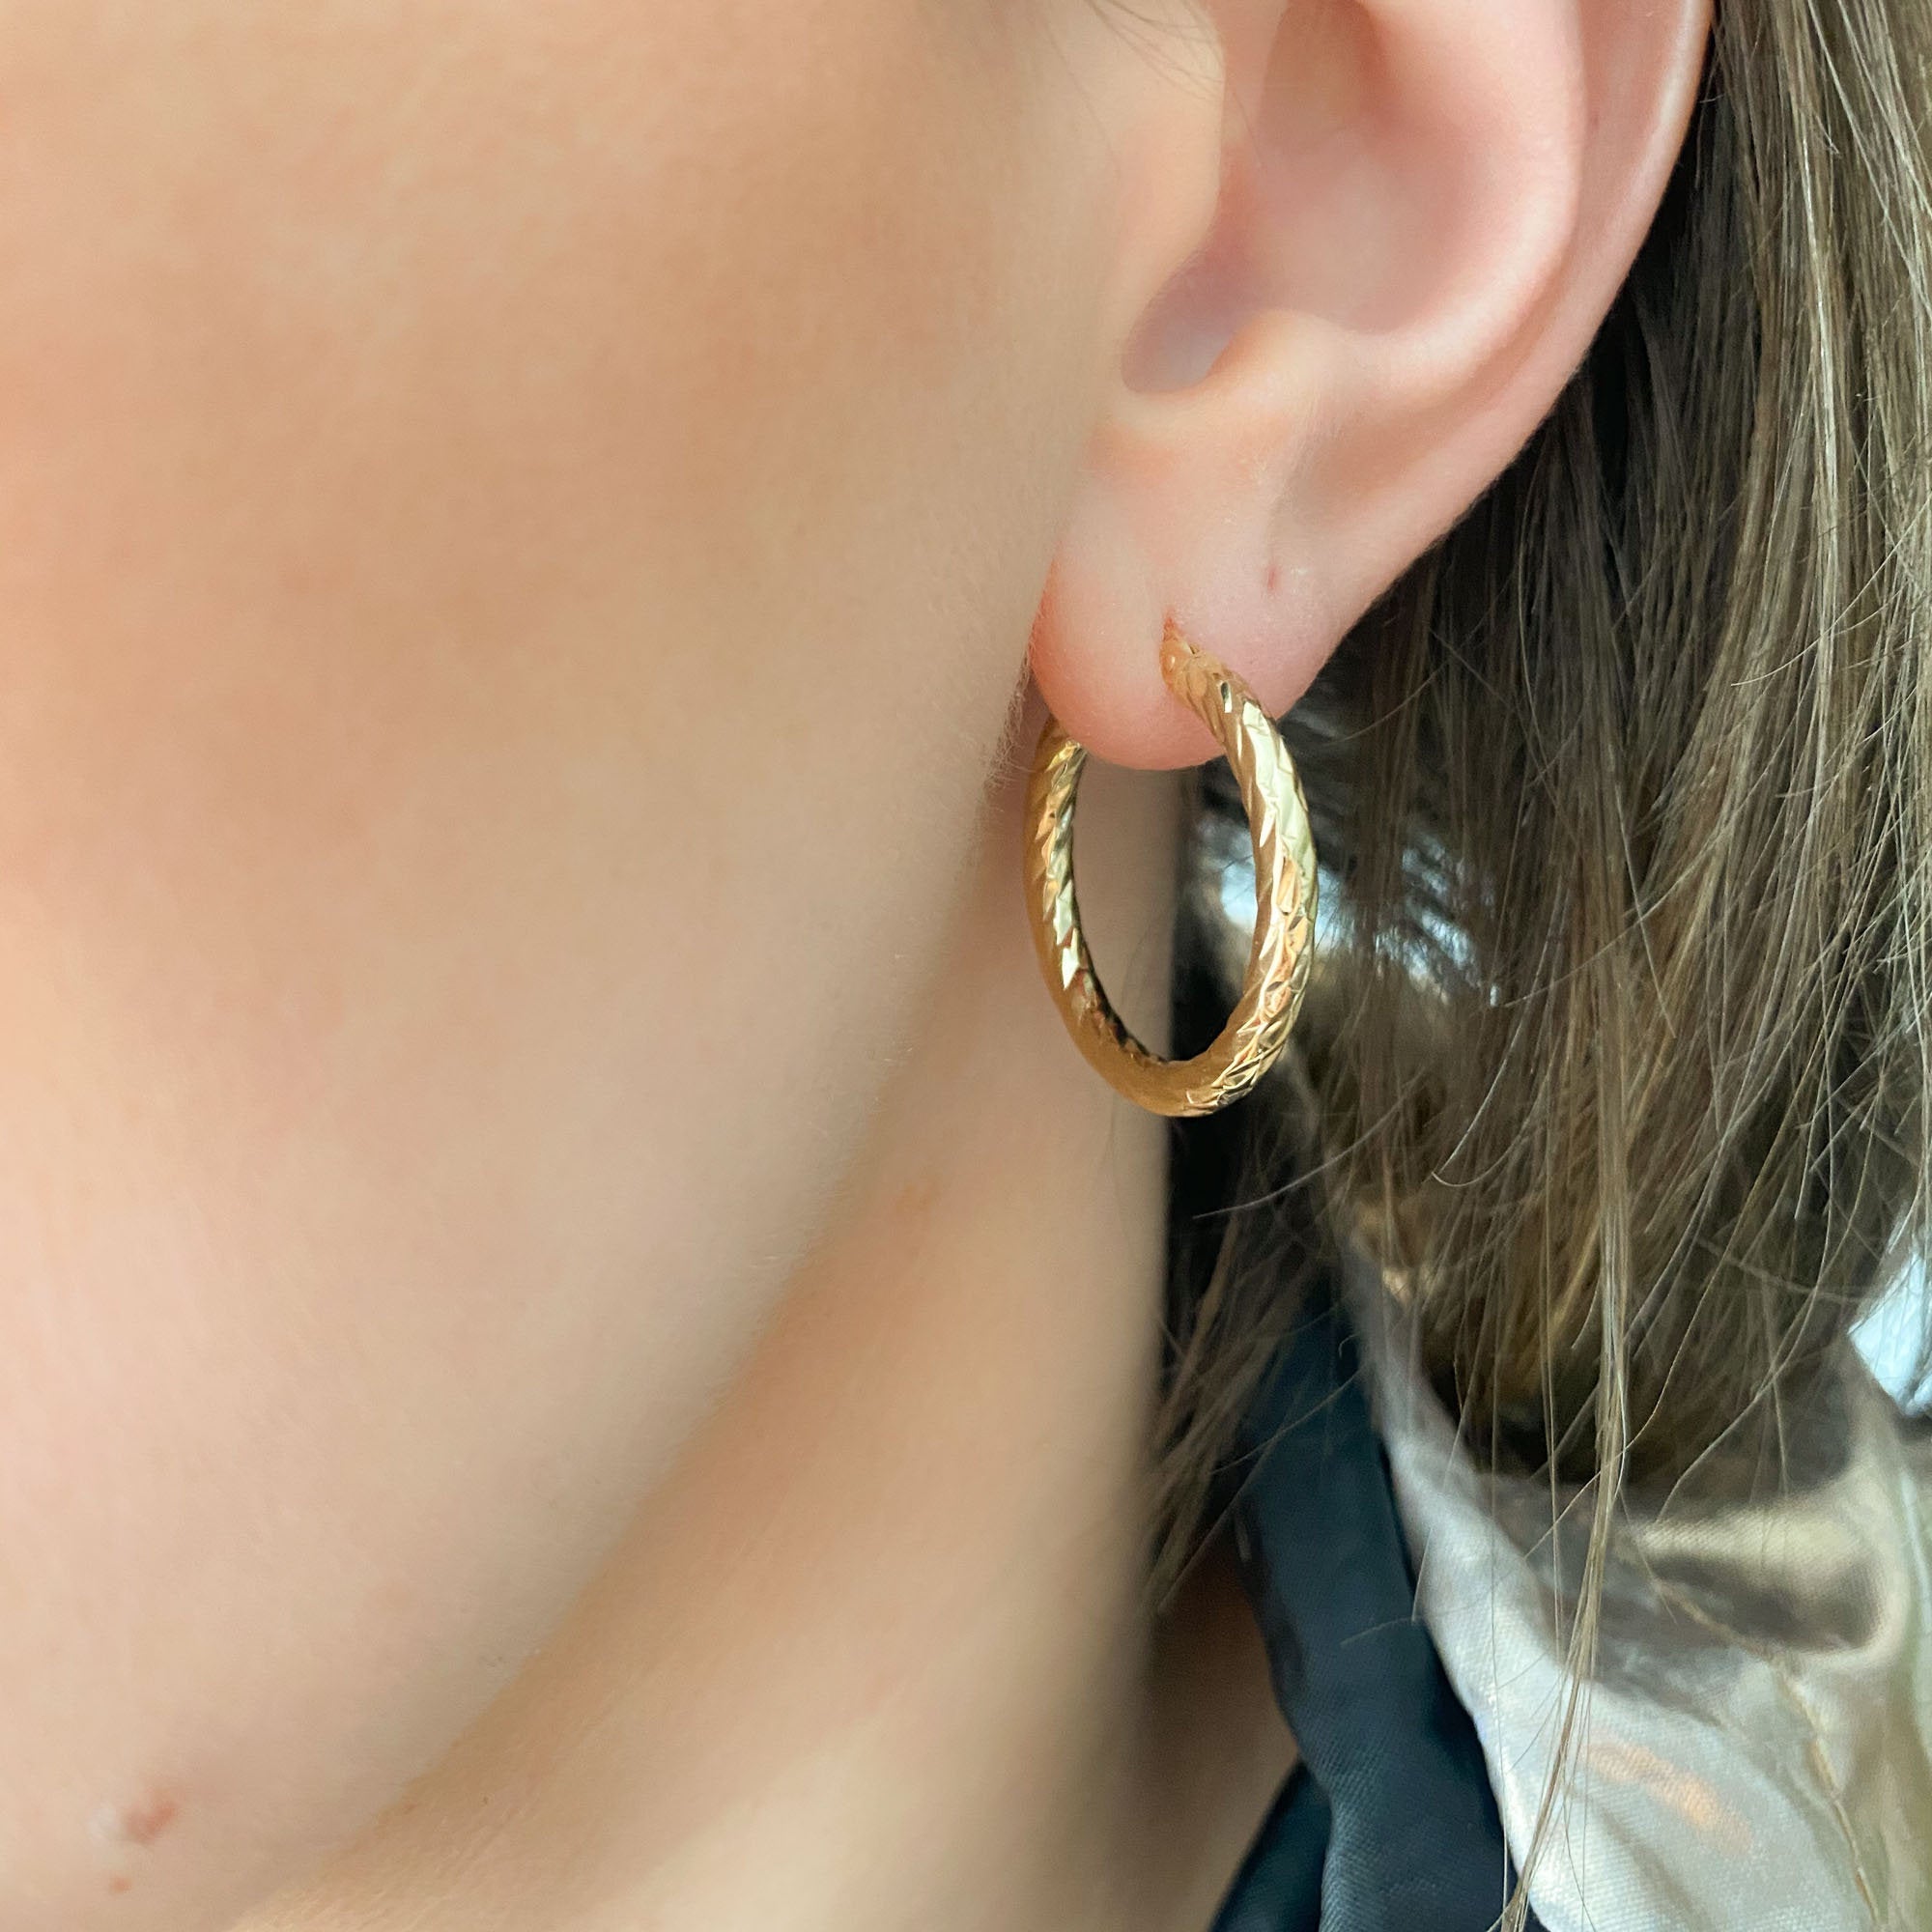 Stainless steel hoop earrings 1,9cm - The Grecian